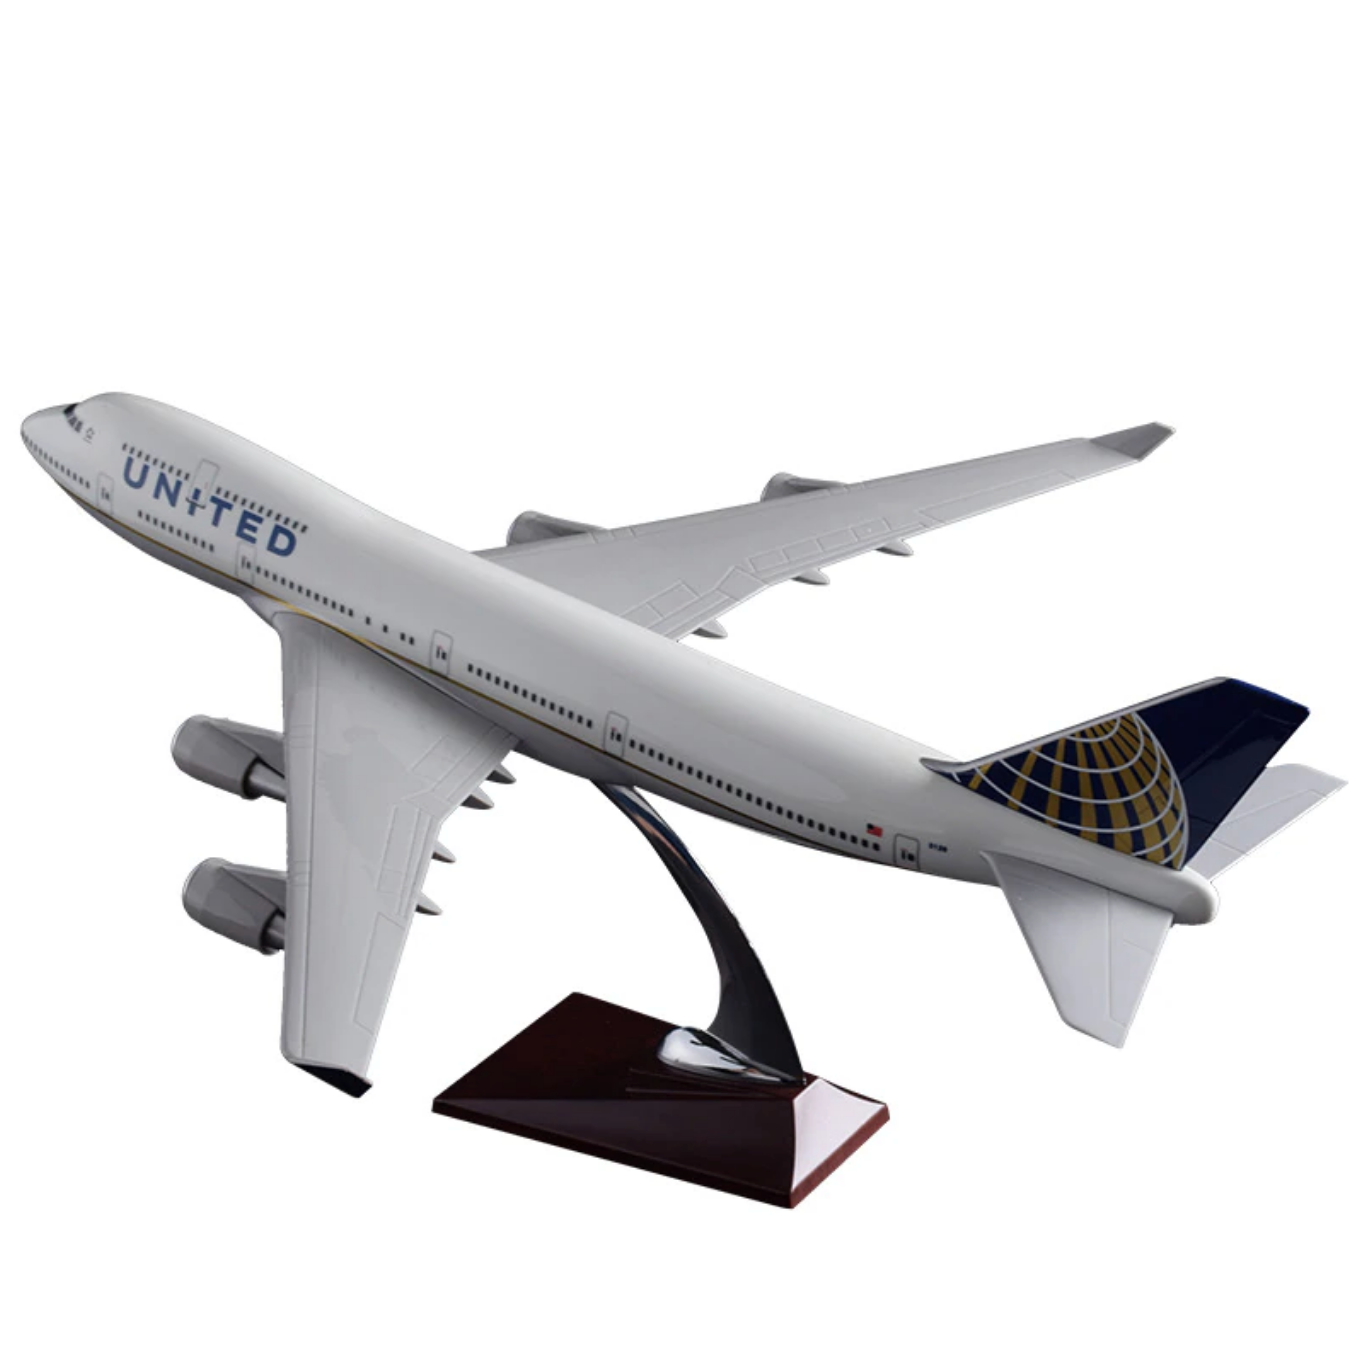 United Airways Boeing 747 Airplane Model (Handmade 47CM)